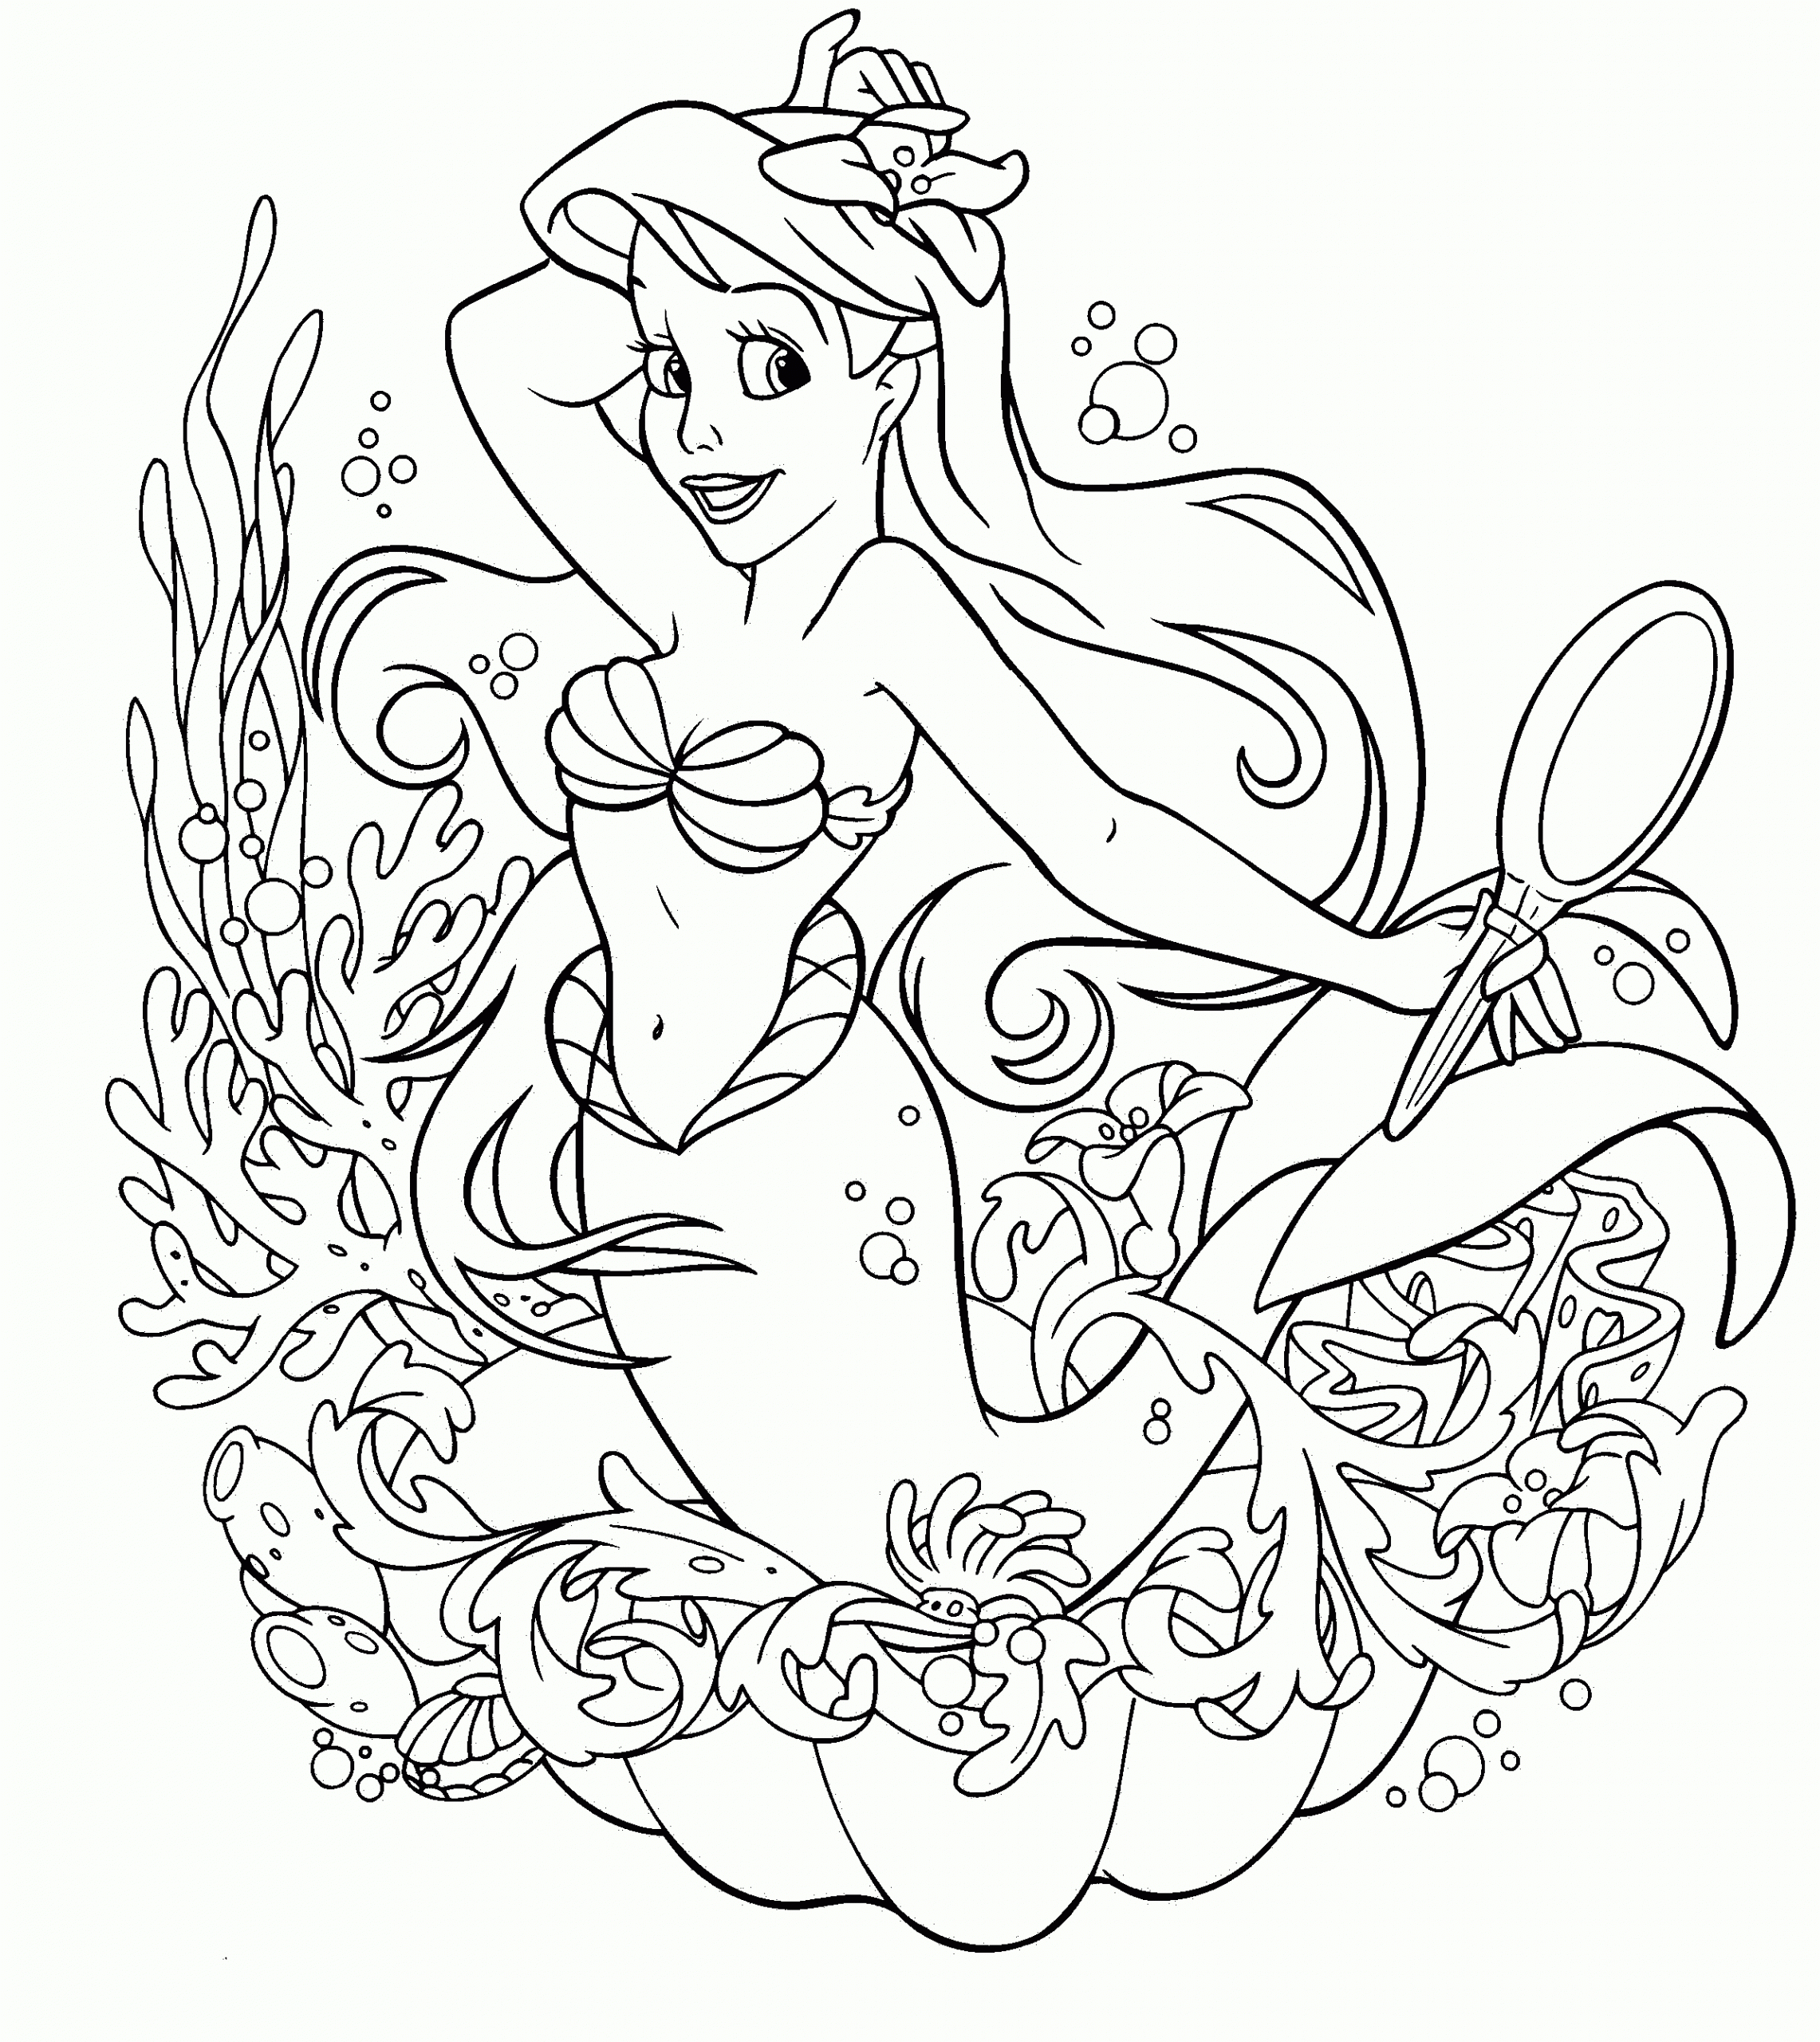 Princesse Disney : Coloriage La Sirène À Imprimer Et Colorier concernant Coloriage Princesse Sirene 